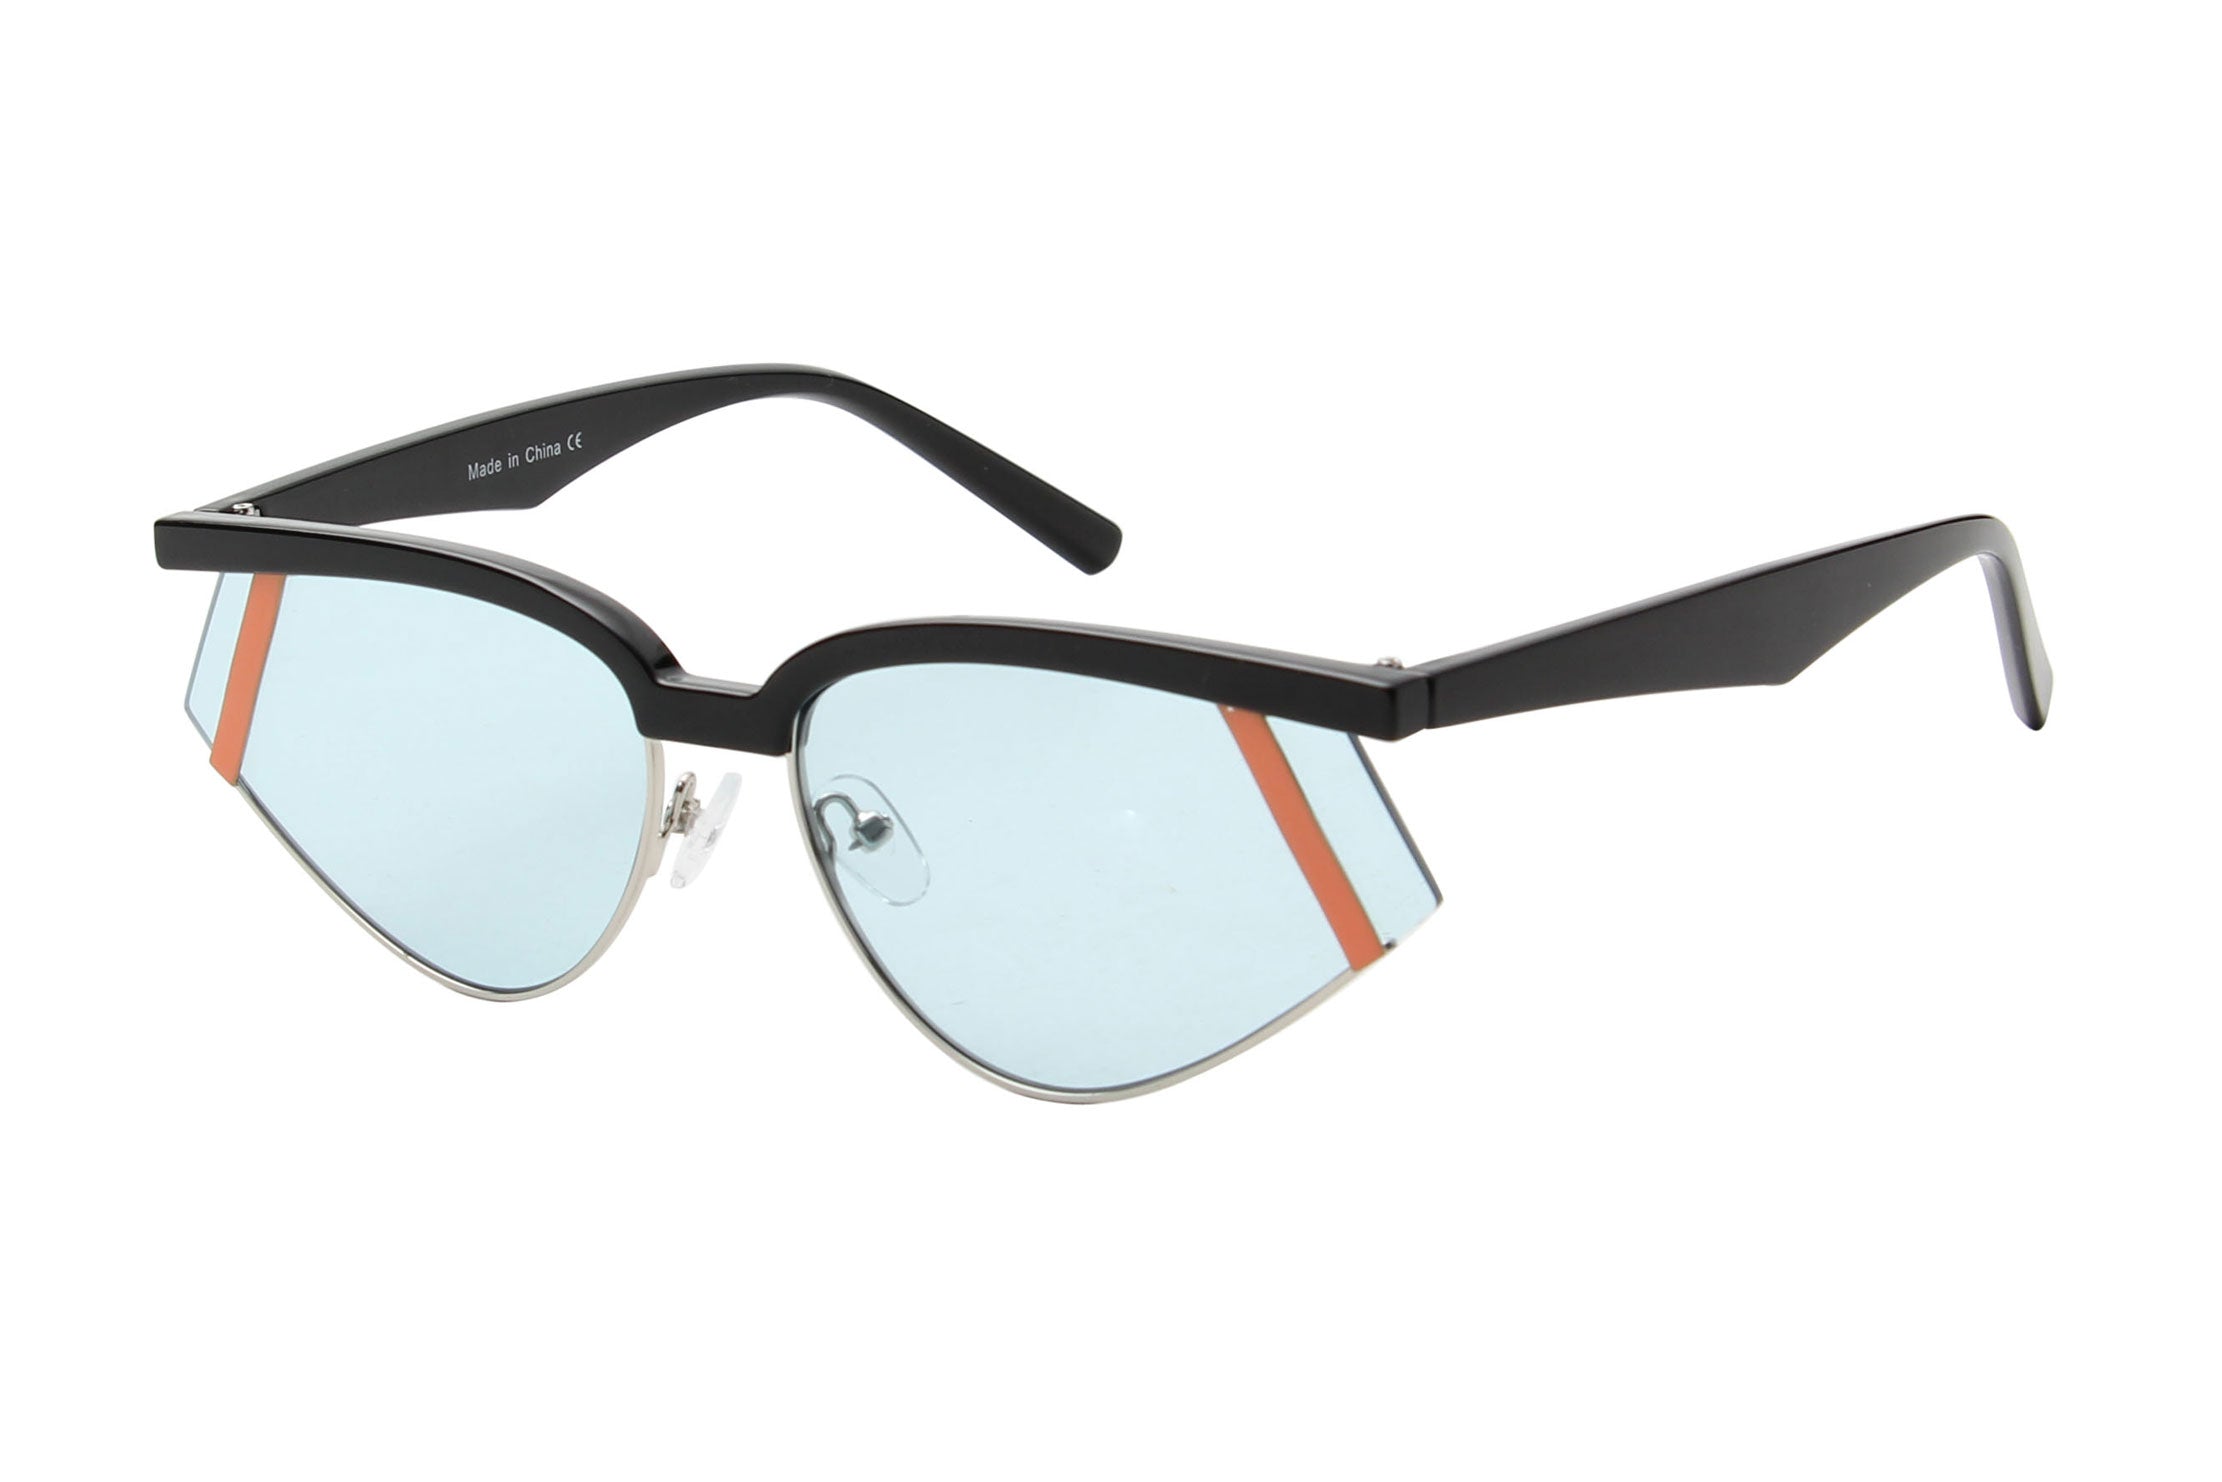 J2001 - Rimless Futuristic Rectangle Fashion Wholesale Sunglasses Blue